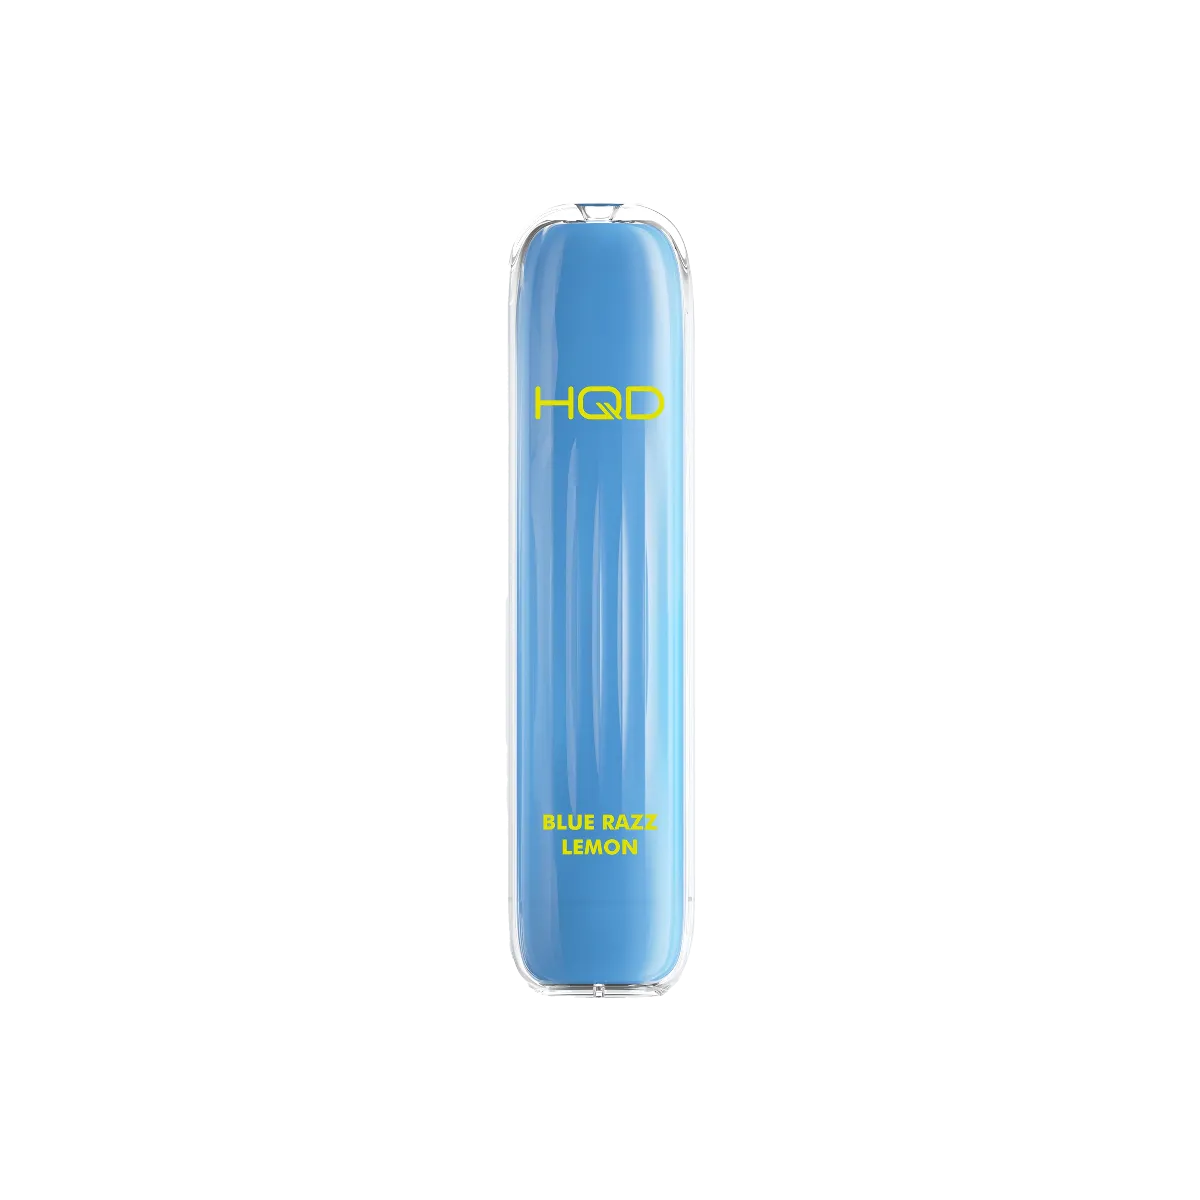 HQD Surv Blue Razz Lemon Blurry Berry Lemon Disposable Einweg E-Zigarette